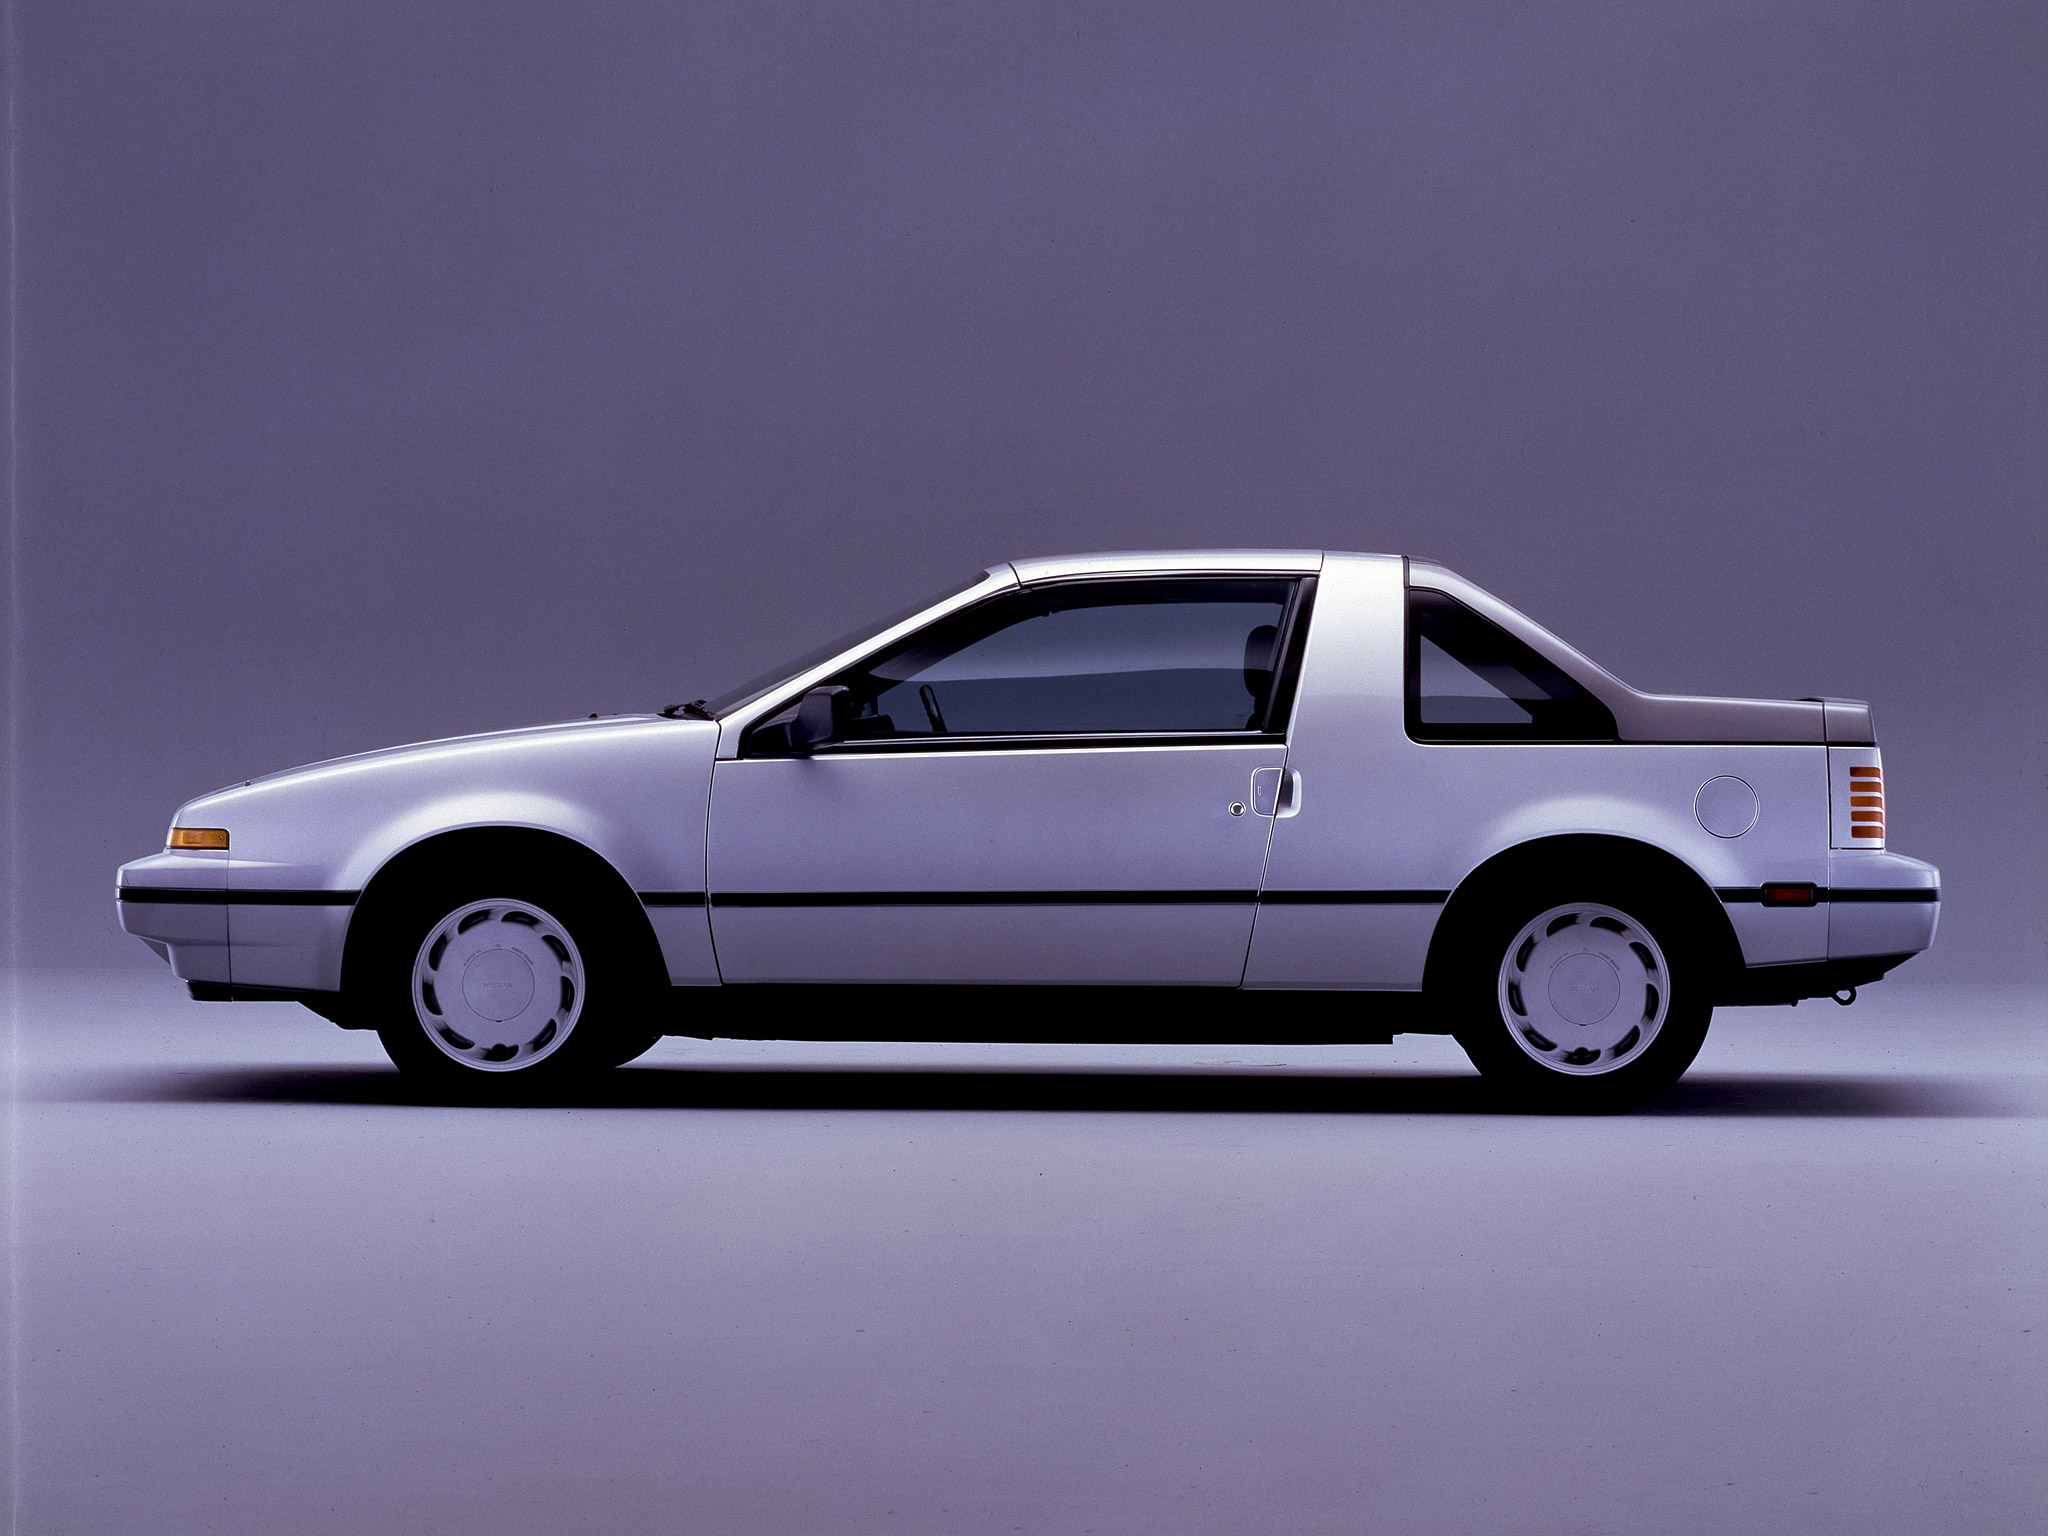  1986 Nissan EXA Wallpaper.